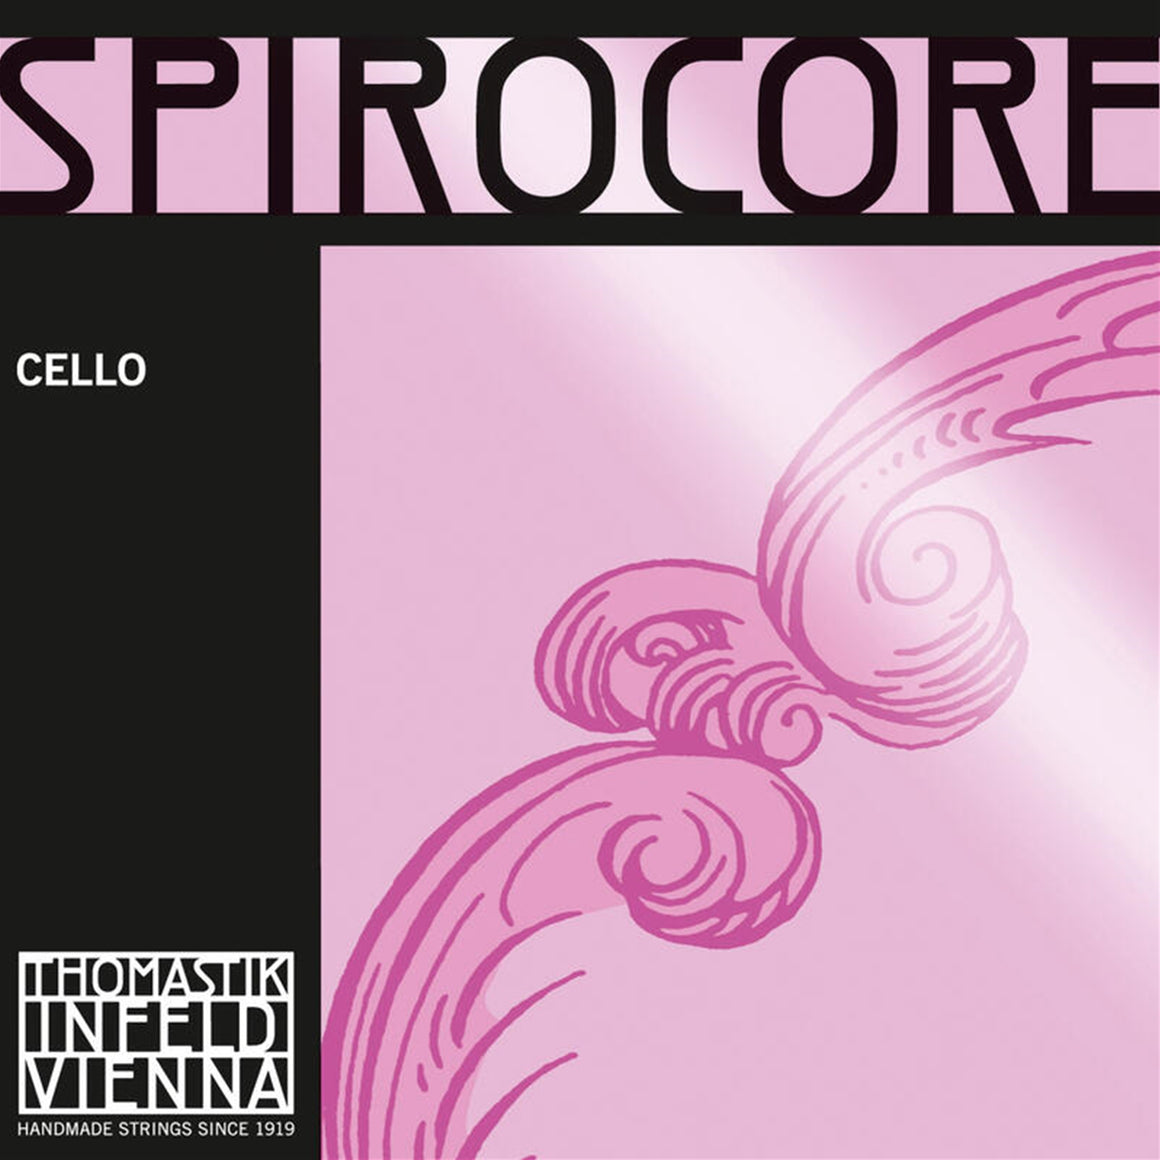 THOMASTIK S29 Spirocore Medium Cello C Chrome String